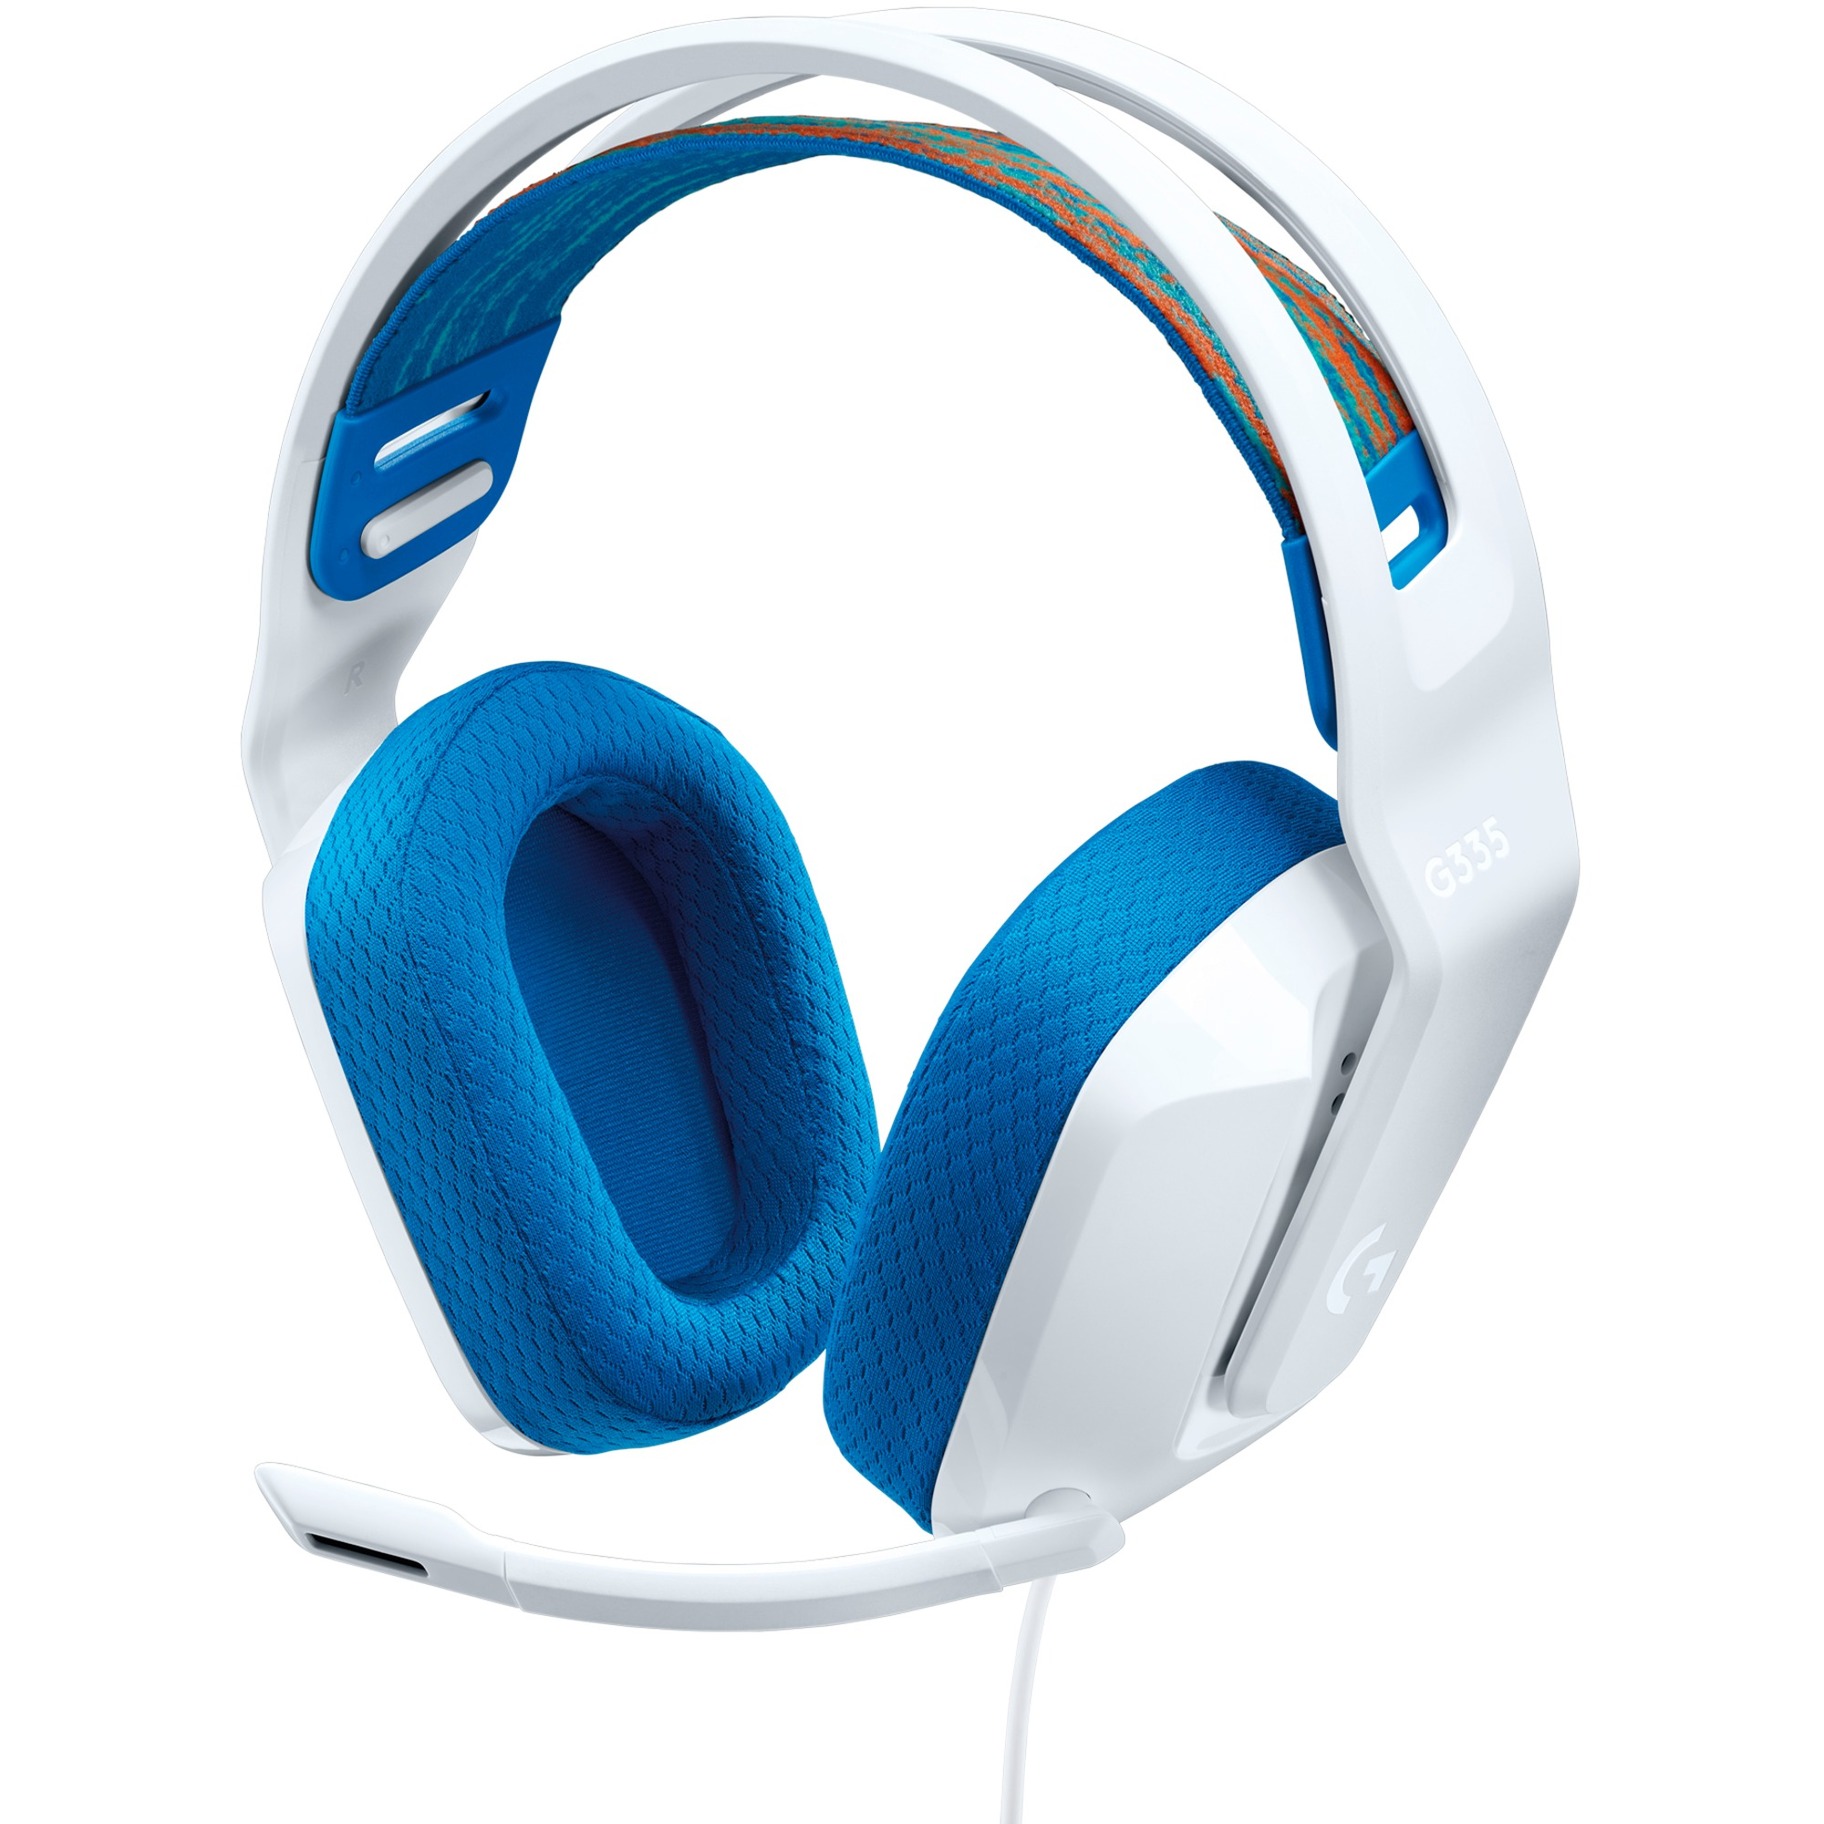 Image of Alternate - G335, Gaming-Headset online einkaufen bei Alternate